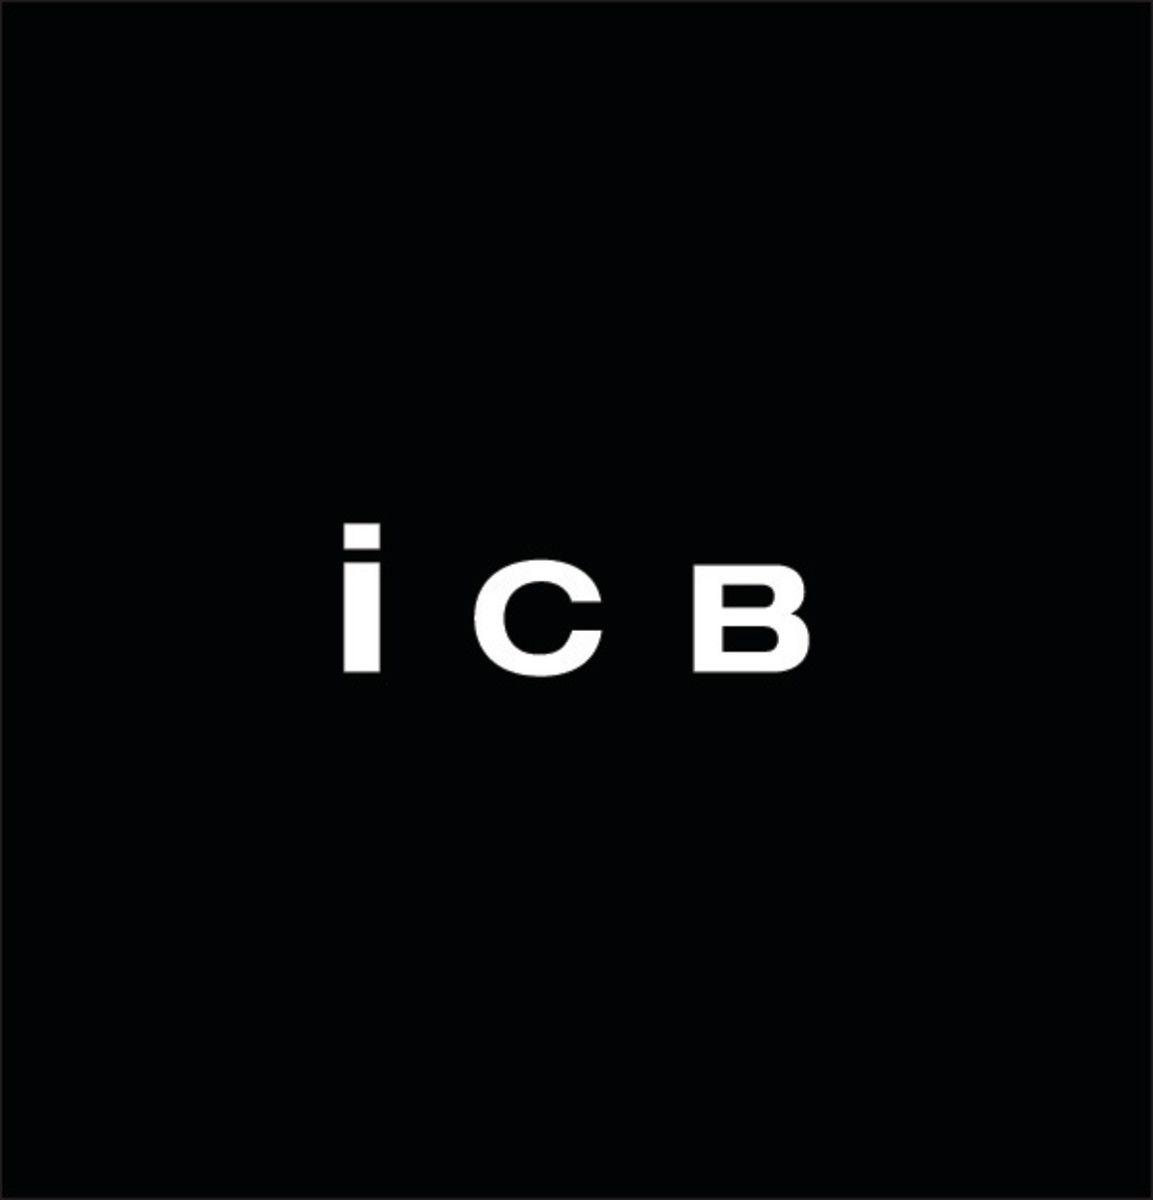 ICB Logo - ICB Is Seeking PR / Marketing Interns In New York, NY - Fashionista